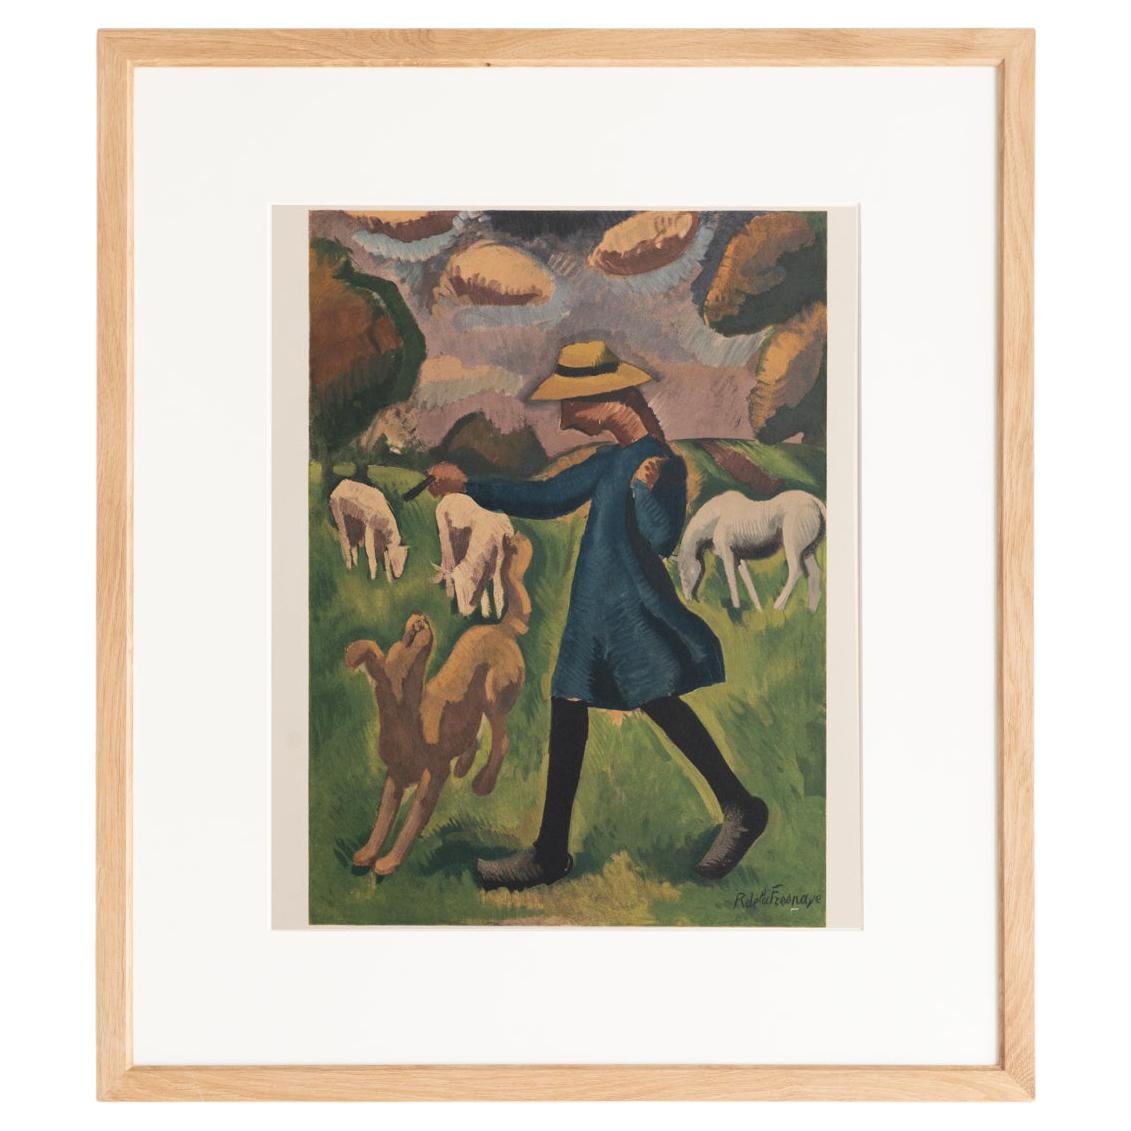 Roger de la Fresnaye 'La Gardeuse de Moutons' Framed Lithography, circa 1968 For Sale